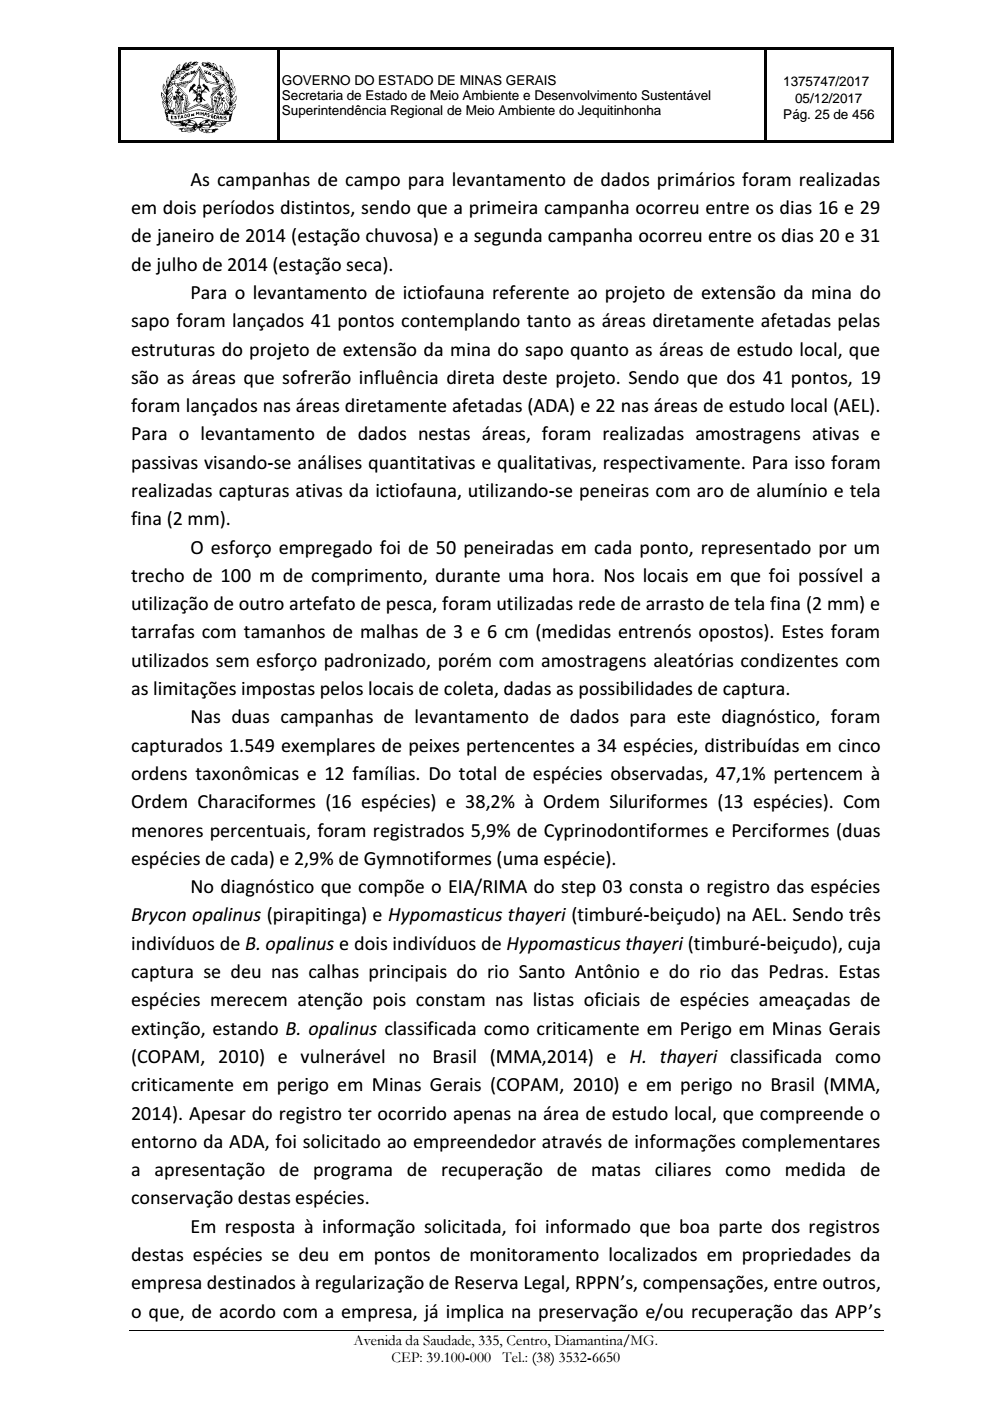 Page 25 from Parecer único da Secretaria de estado de Meio Ambiente e Desenvolvimento Sustentável (SEMAD)